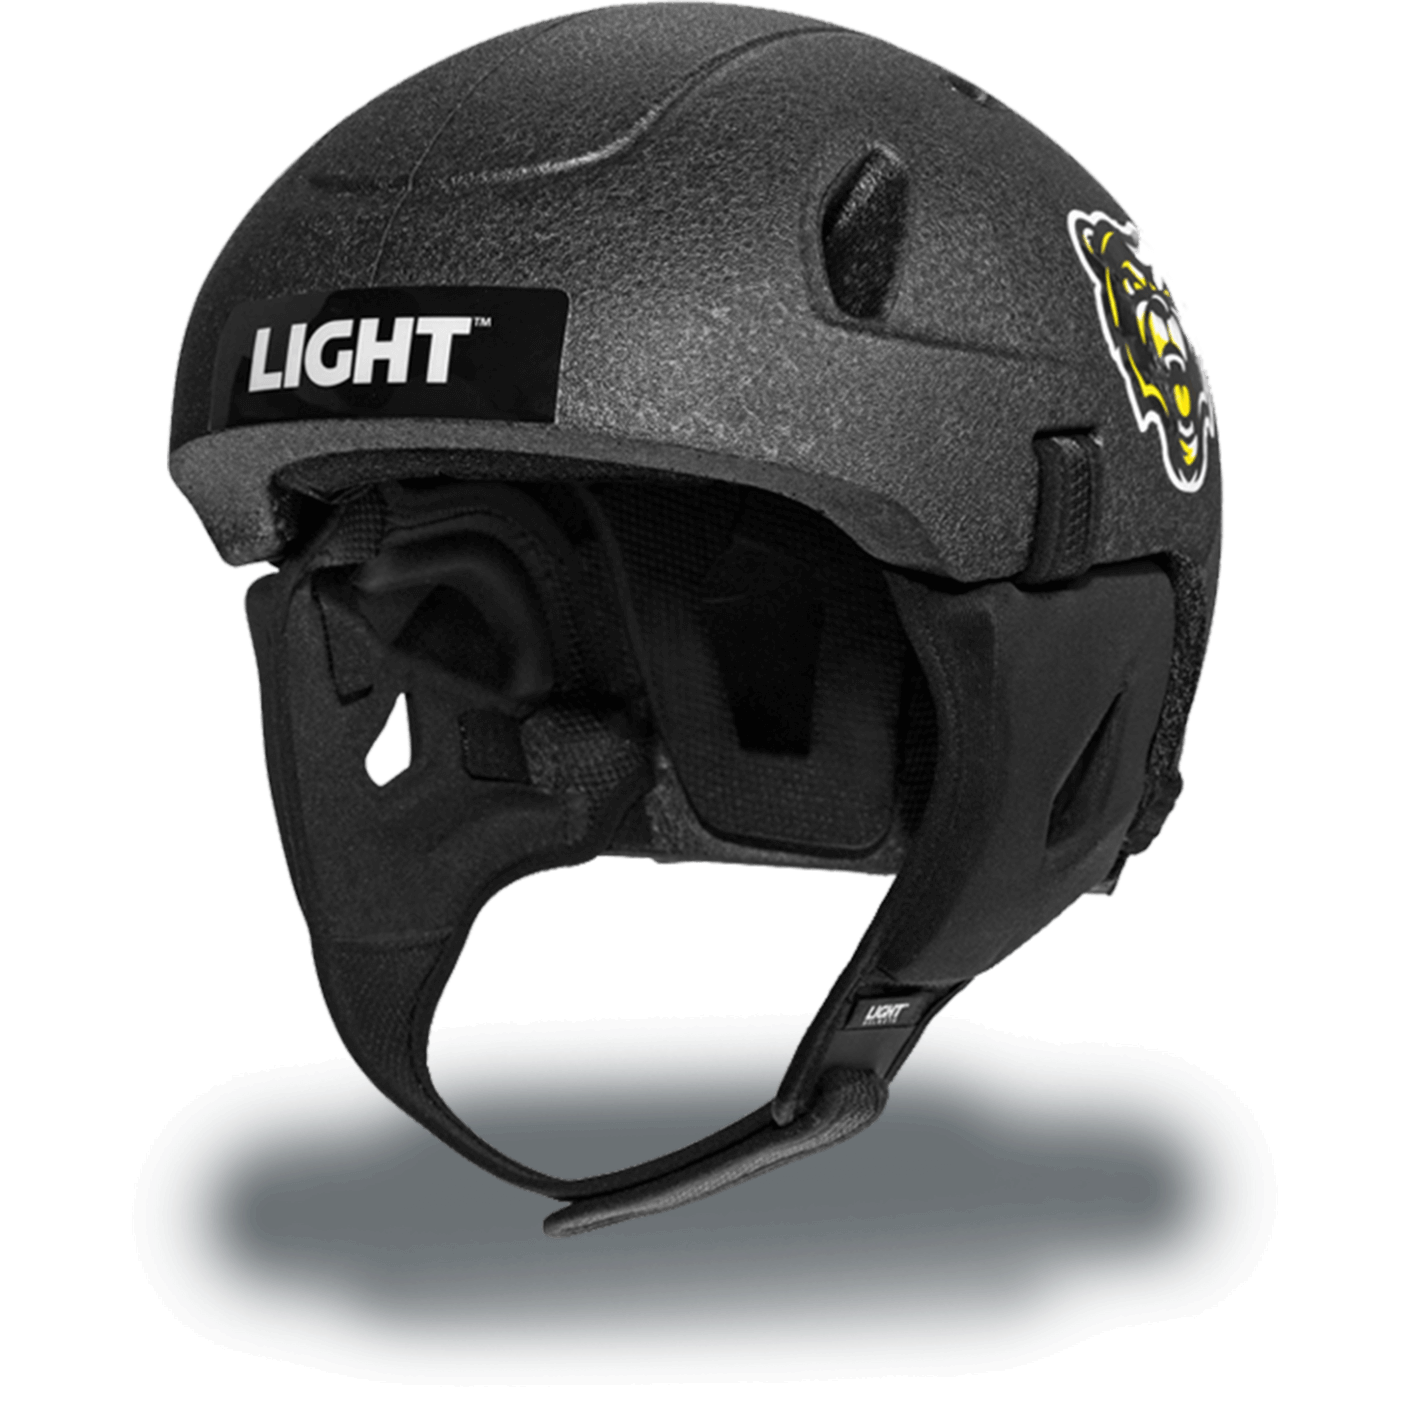 SS1 Light Helmet